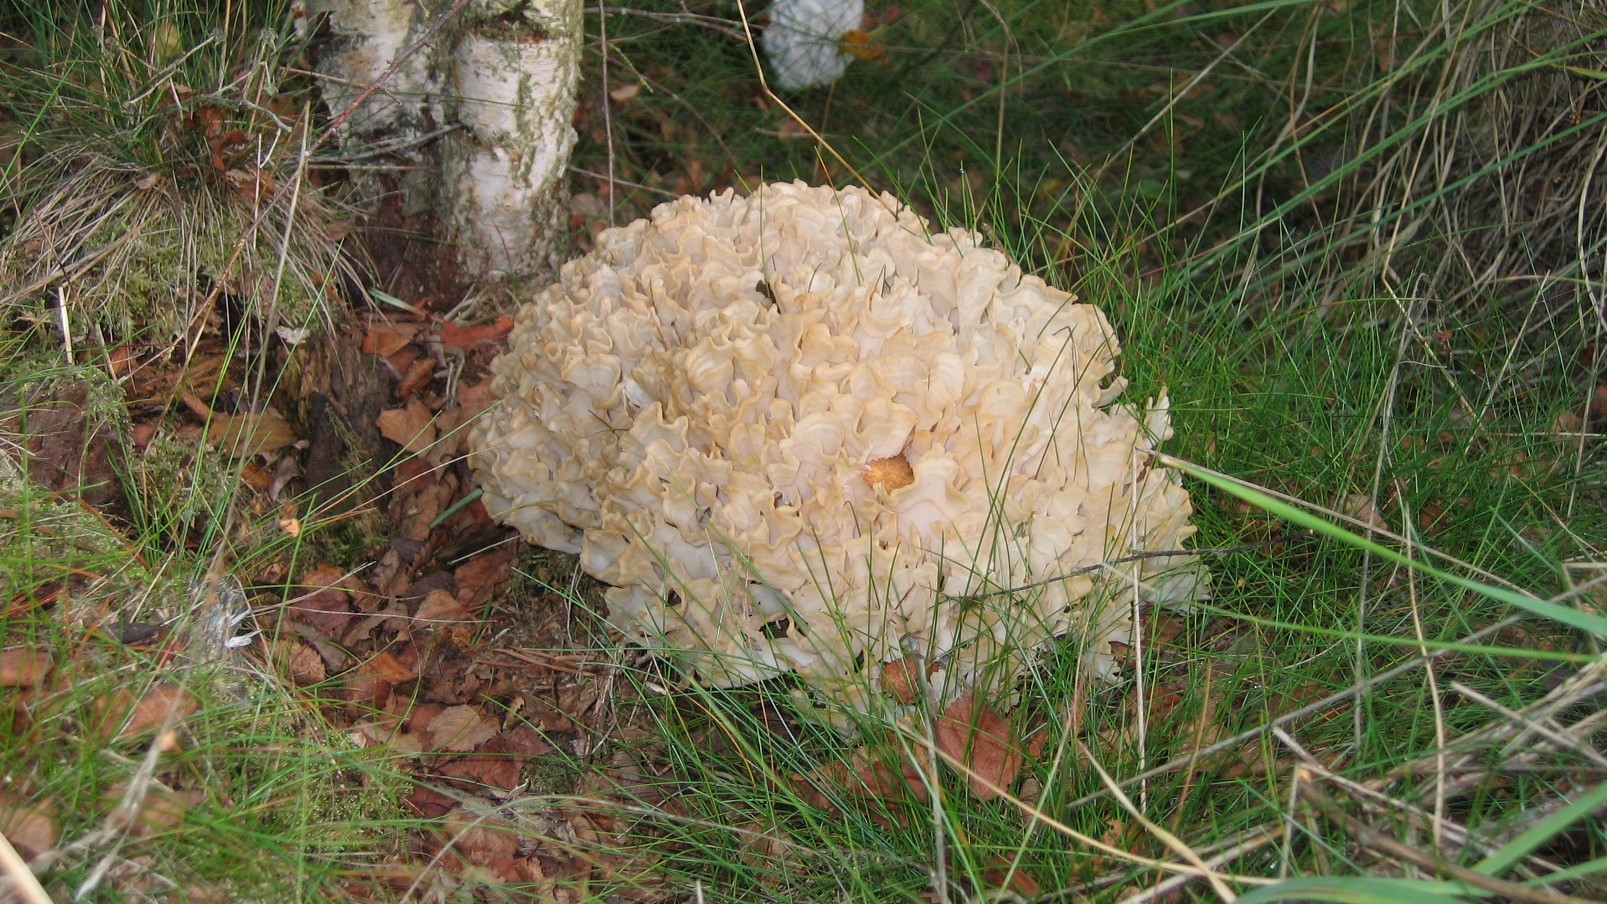 Cauliflower fungi.